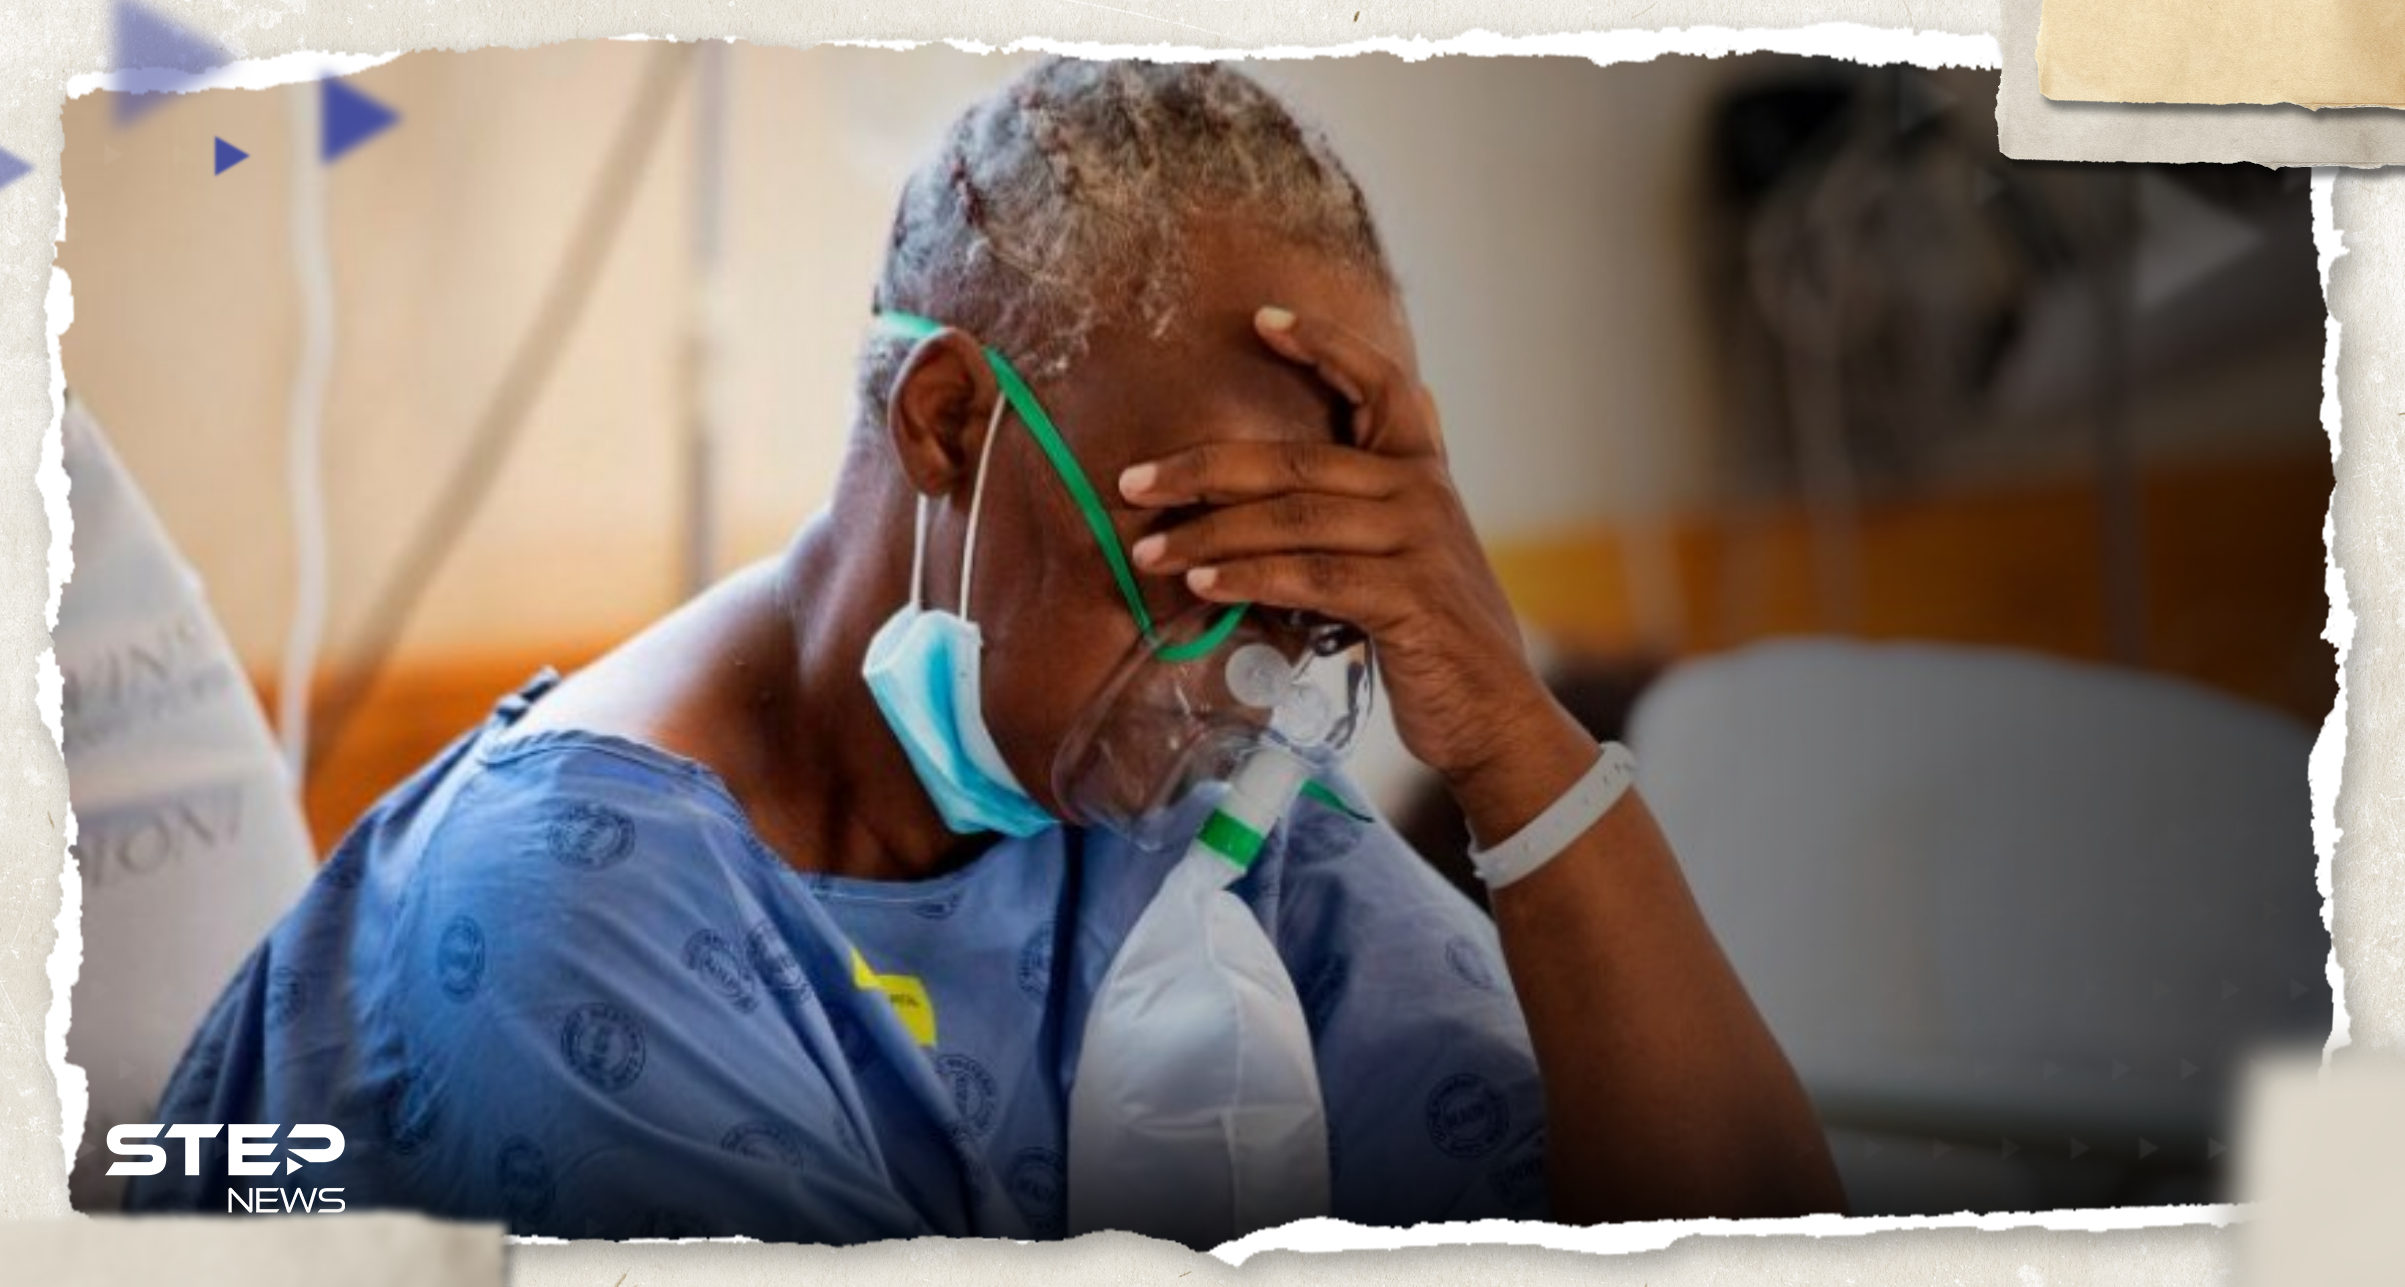 مرض غامض يودي بحياة 7 أشخاص وعشرات الإصابات في دولة أفريقية